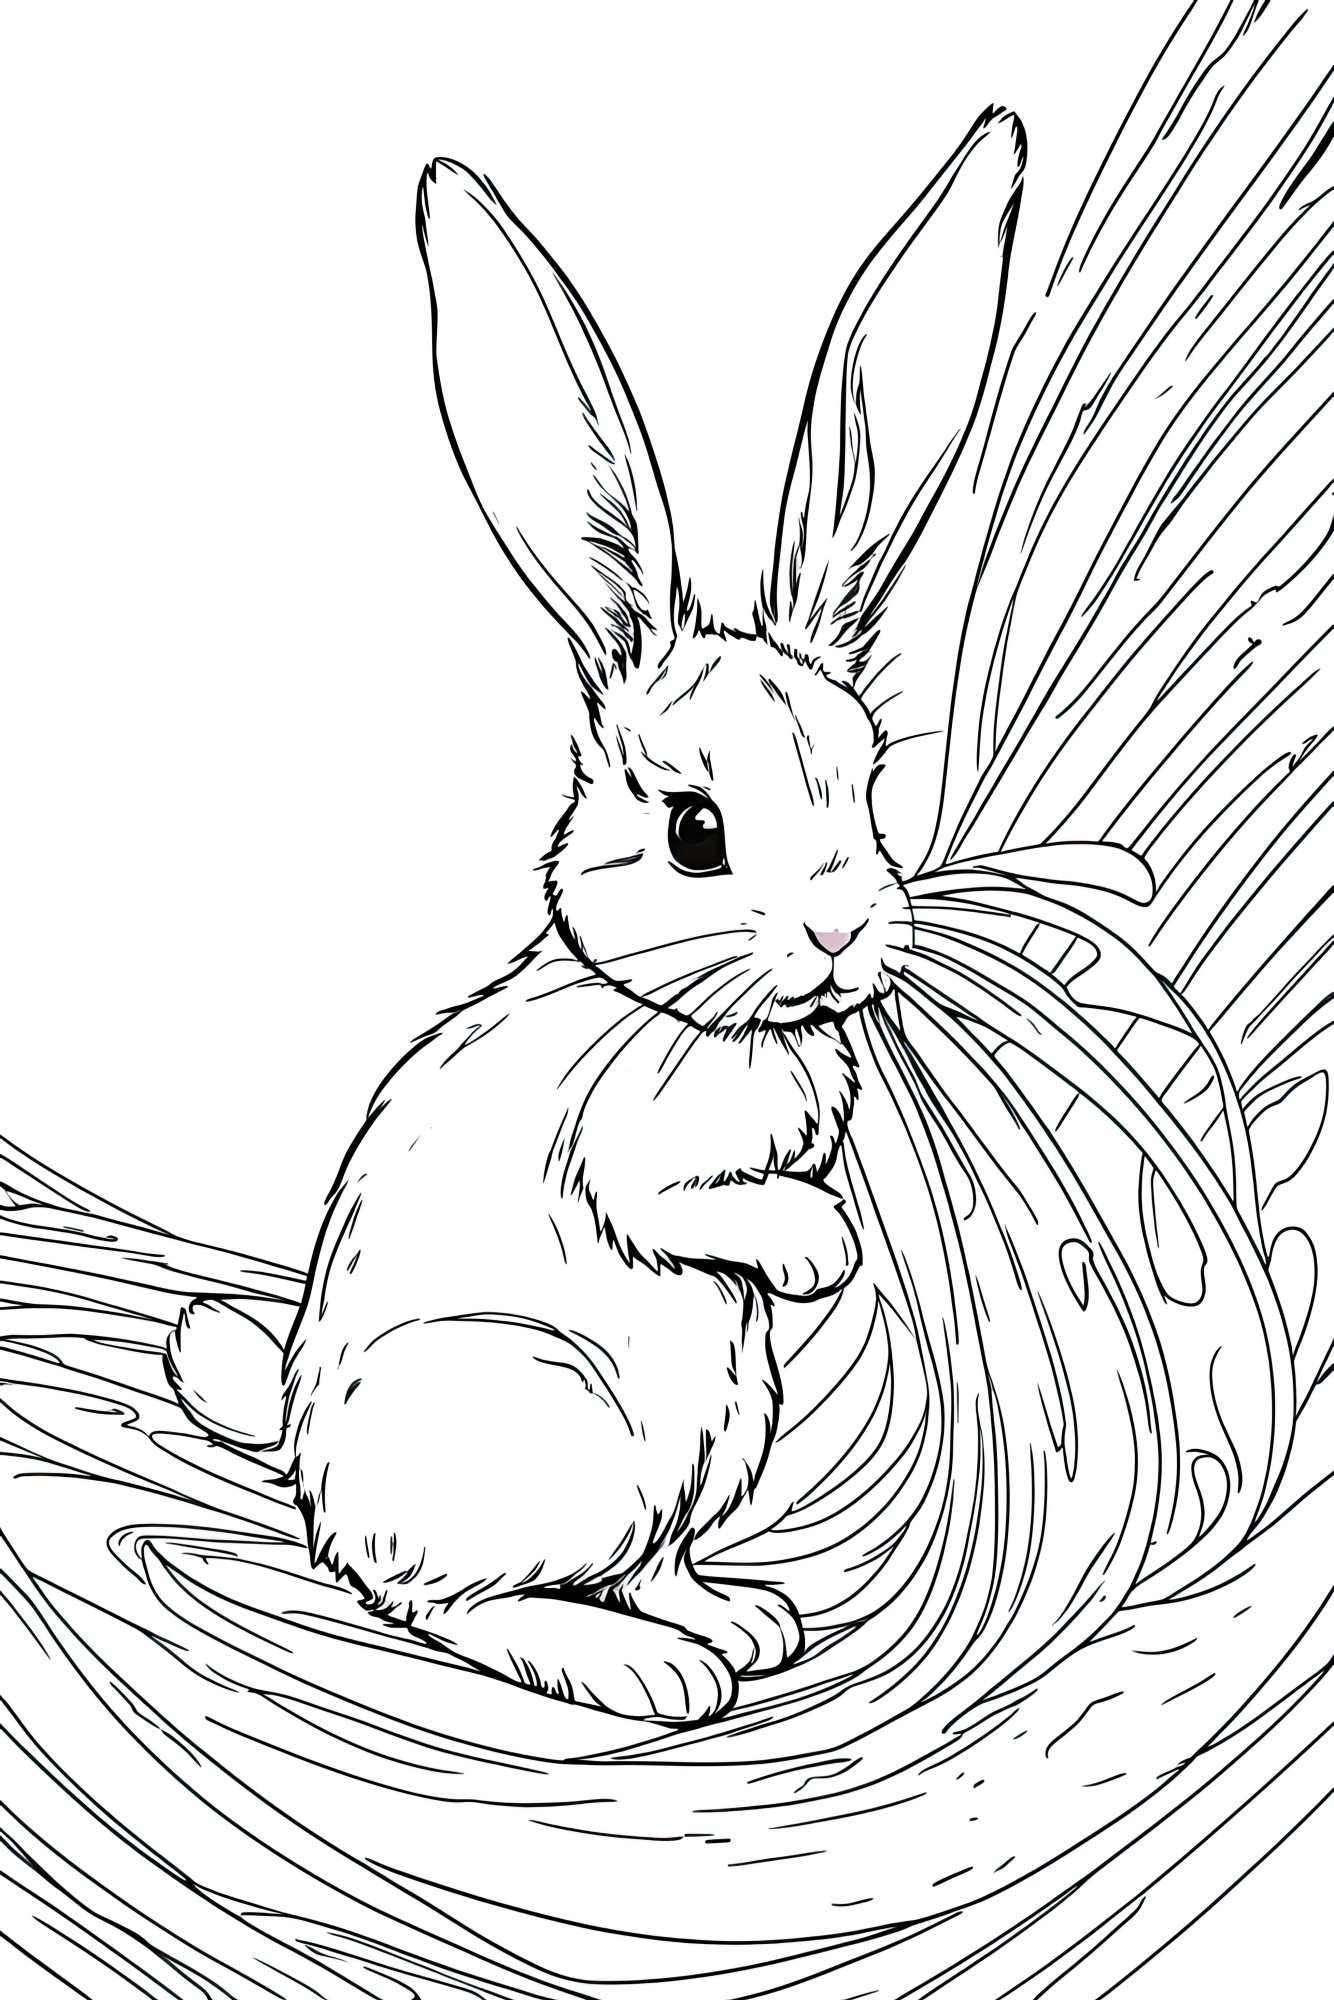 Раскраска для детей: заяц беляк в сене